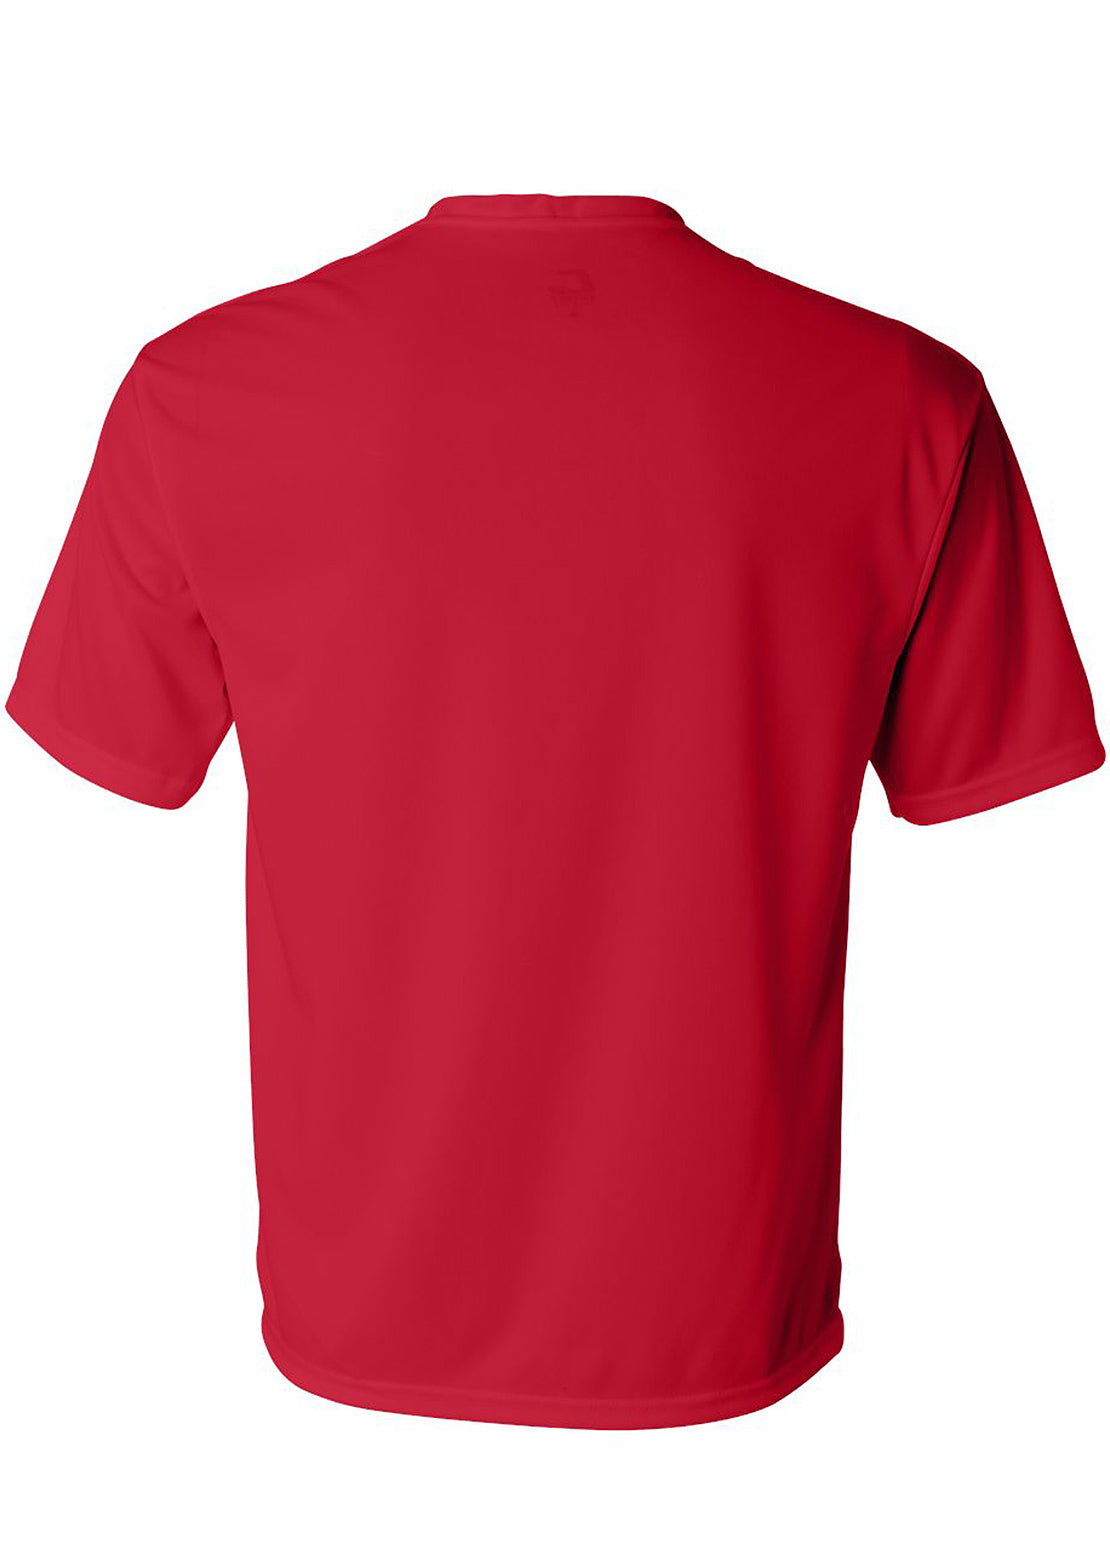 AN-Morin X Ski T-Shirt Unisex Red